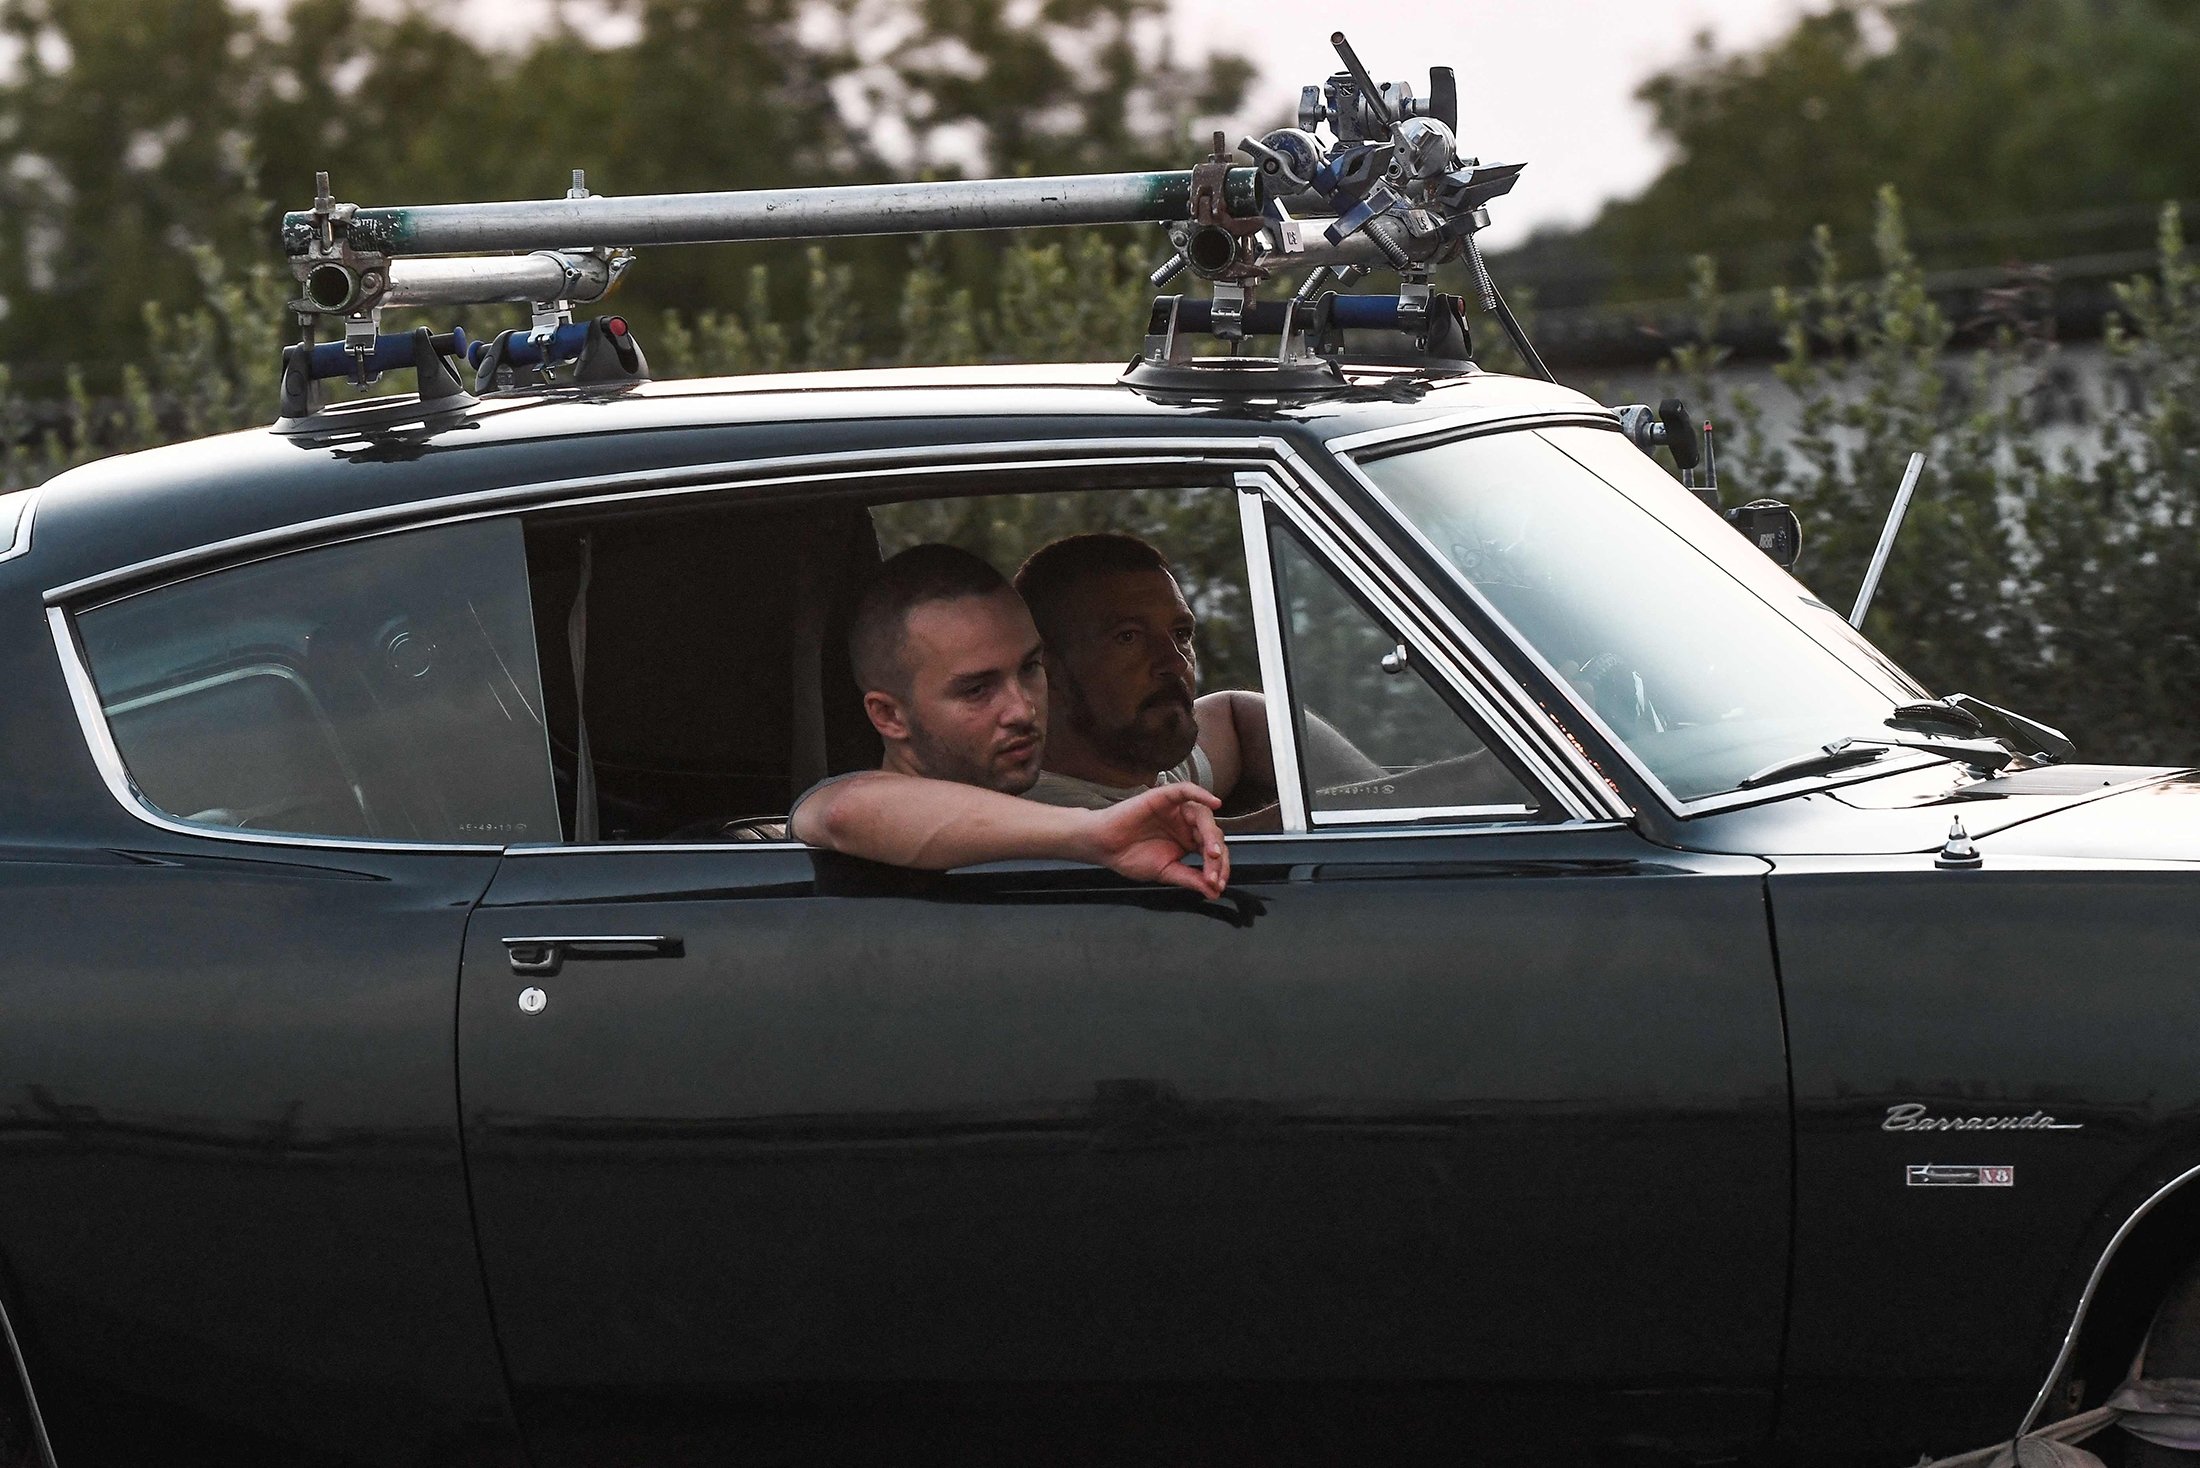 El actor, director y productor español Antonio Banderas (atrás) conduce un automóvil, con un miembro del equipo durante el rodaje del thriller, The Enforcer, en la carretera de circunvalación de Salónica, Grecia, el 30 de junio de 2021 (AFP Photo)